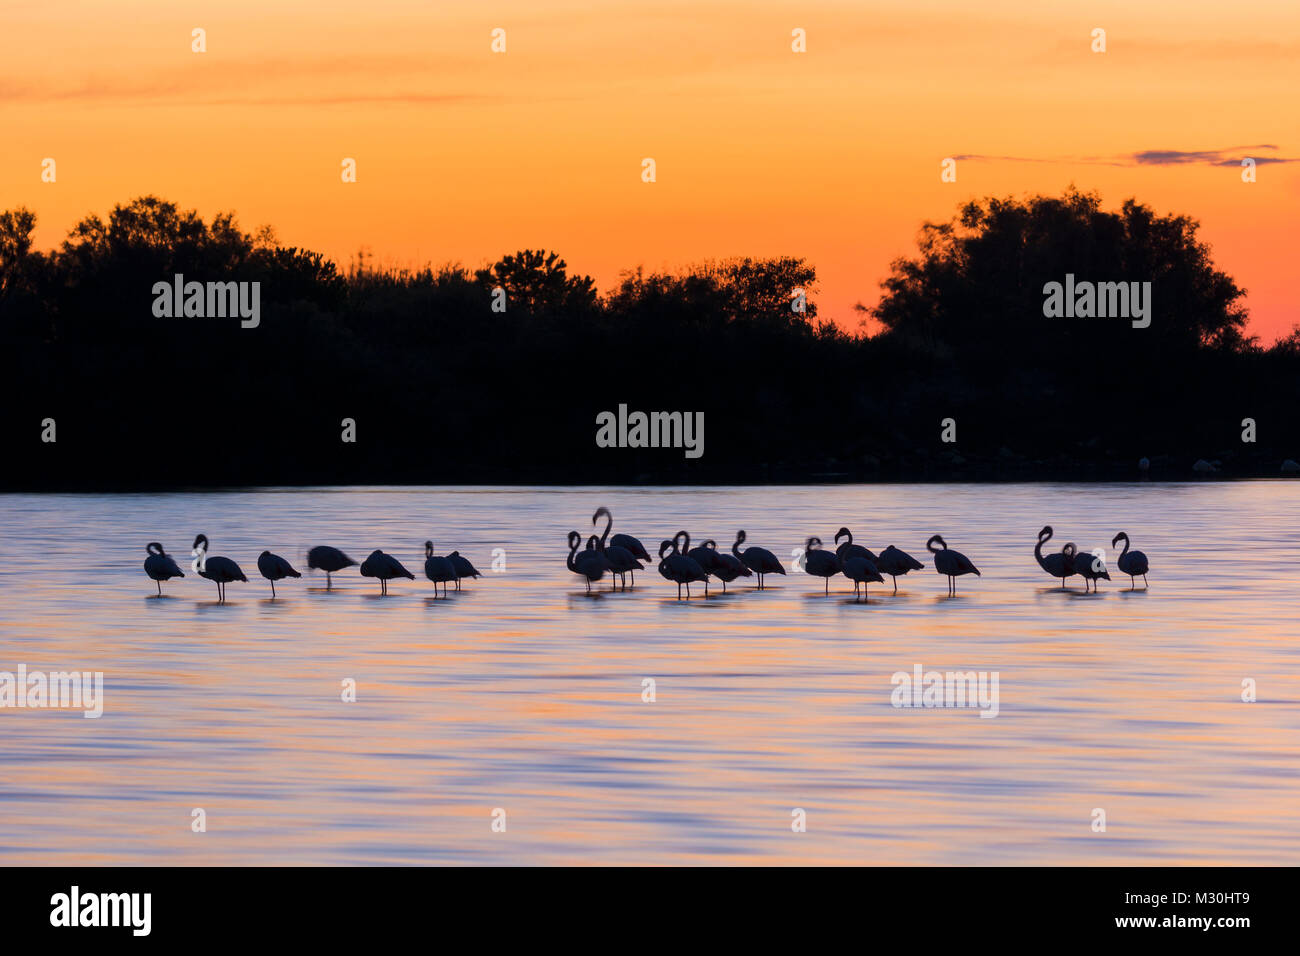 Europäische Flamingo, Flamingo, Phoenicopterus roseus, bei Sonnenuntergang, Saintes-Maries-de-la-Mer, Parc naturel régional de Camargue, Languedoc Roussillon, Frankreich Stockfoto